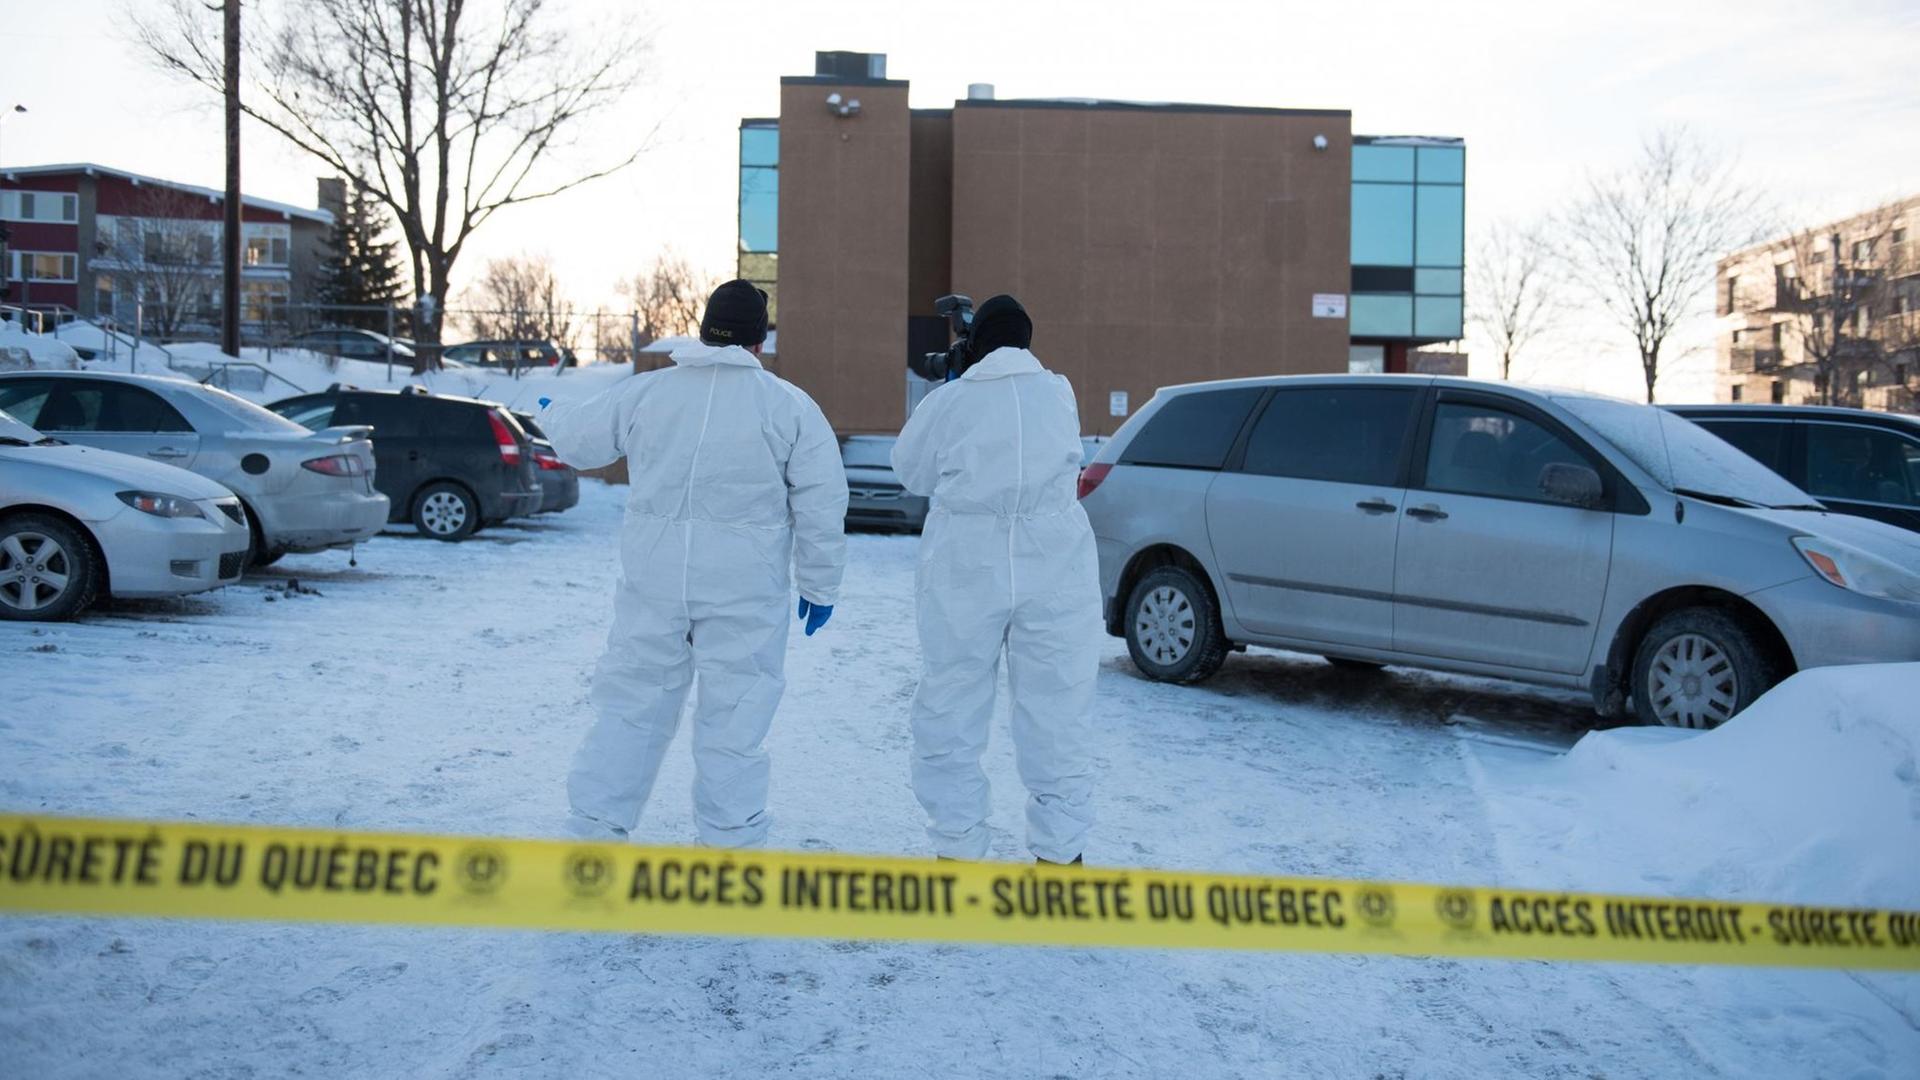 Die Moschee in Quebec, auf die ein Anschlag mit sechs Toten verübt wurde - durch einen rechten Nationalisten